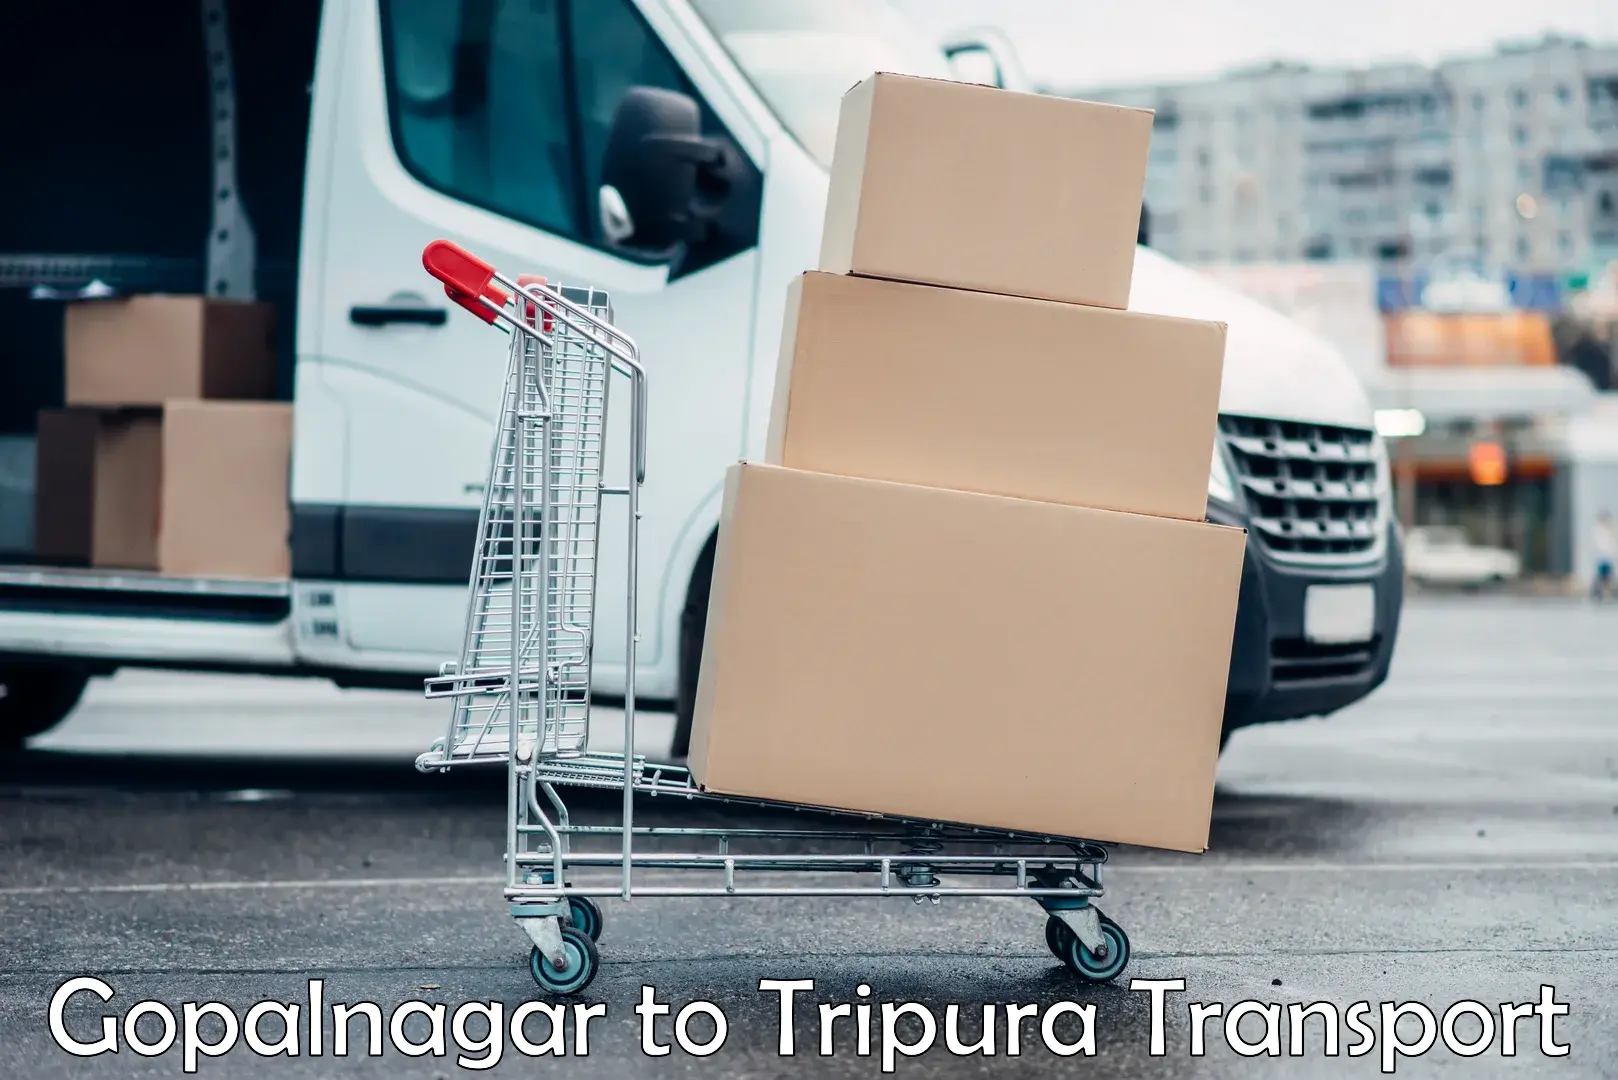 Goods delivery service Gopalnagar to Kamalpur